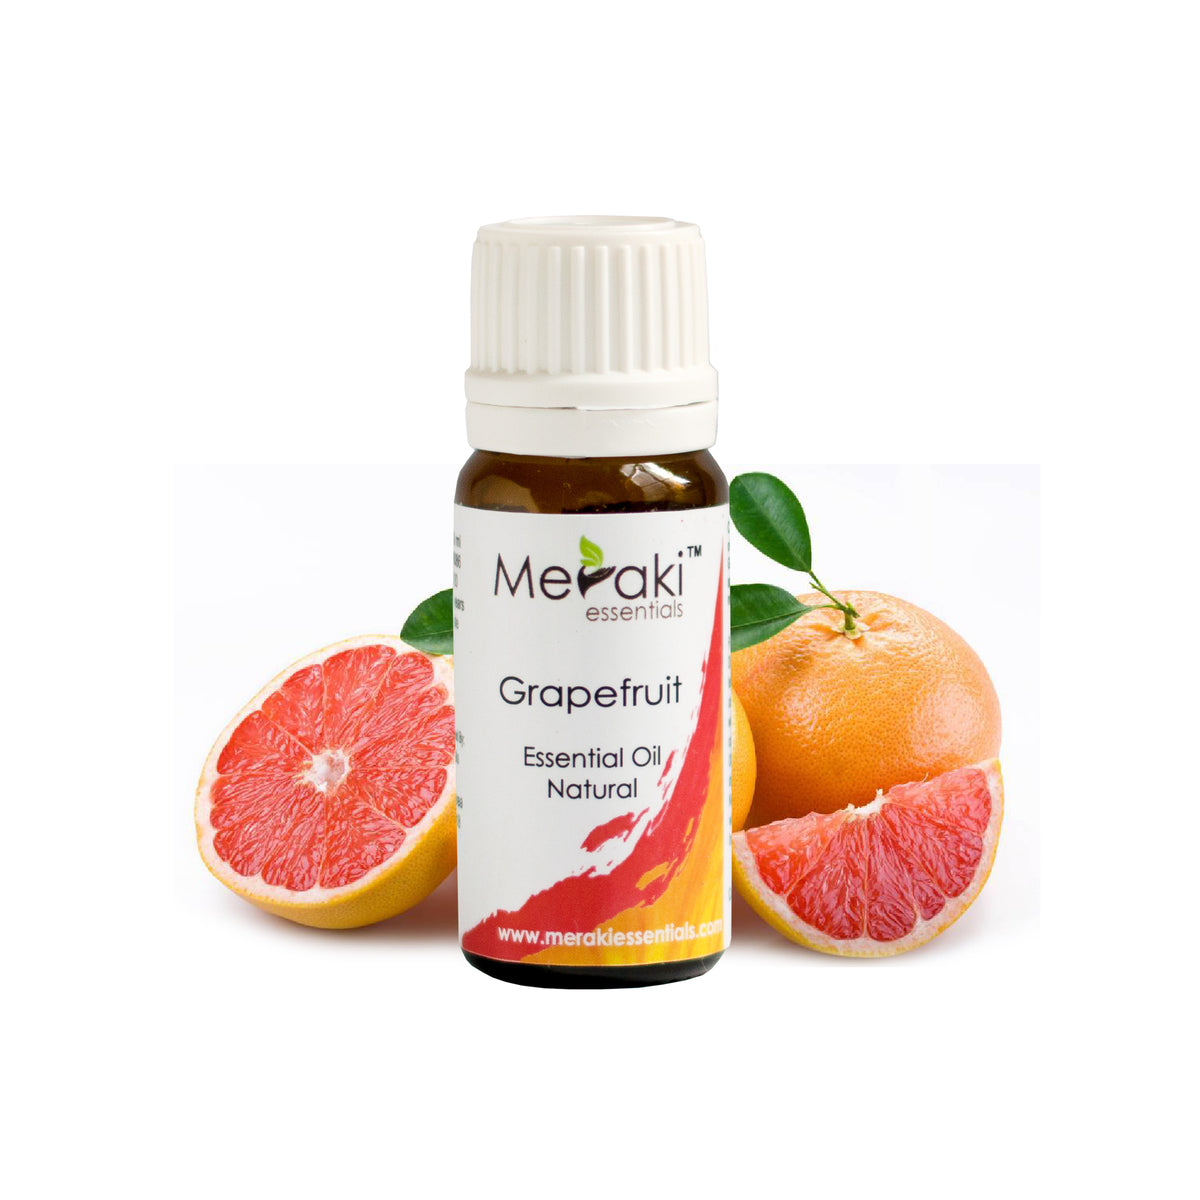 Meraki Essentials Grapefruit Essential Oil